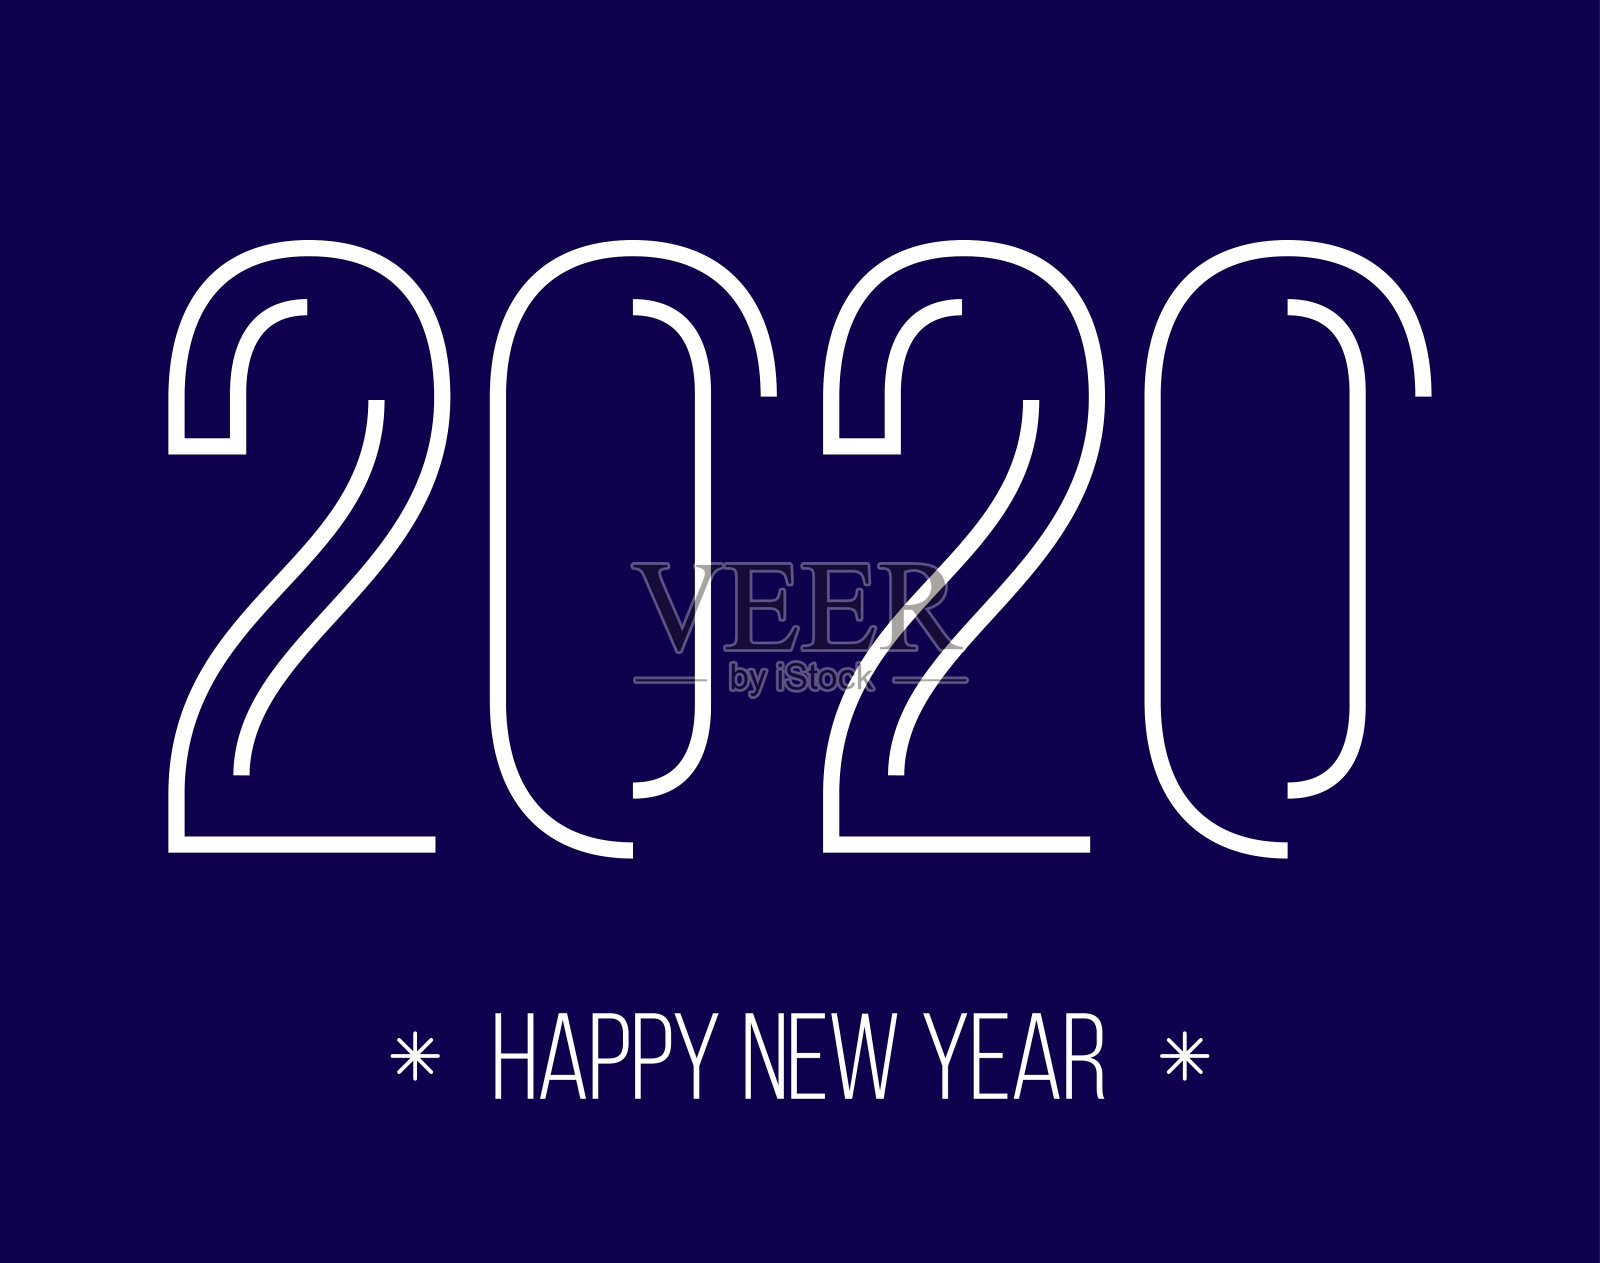 极简主义的2020年新年贺卡上的蓝色背景。插画图片素材